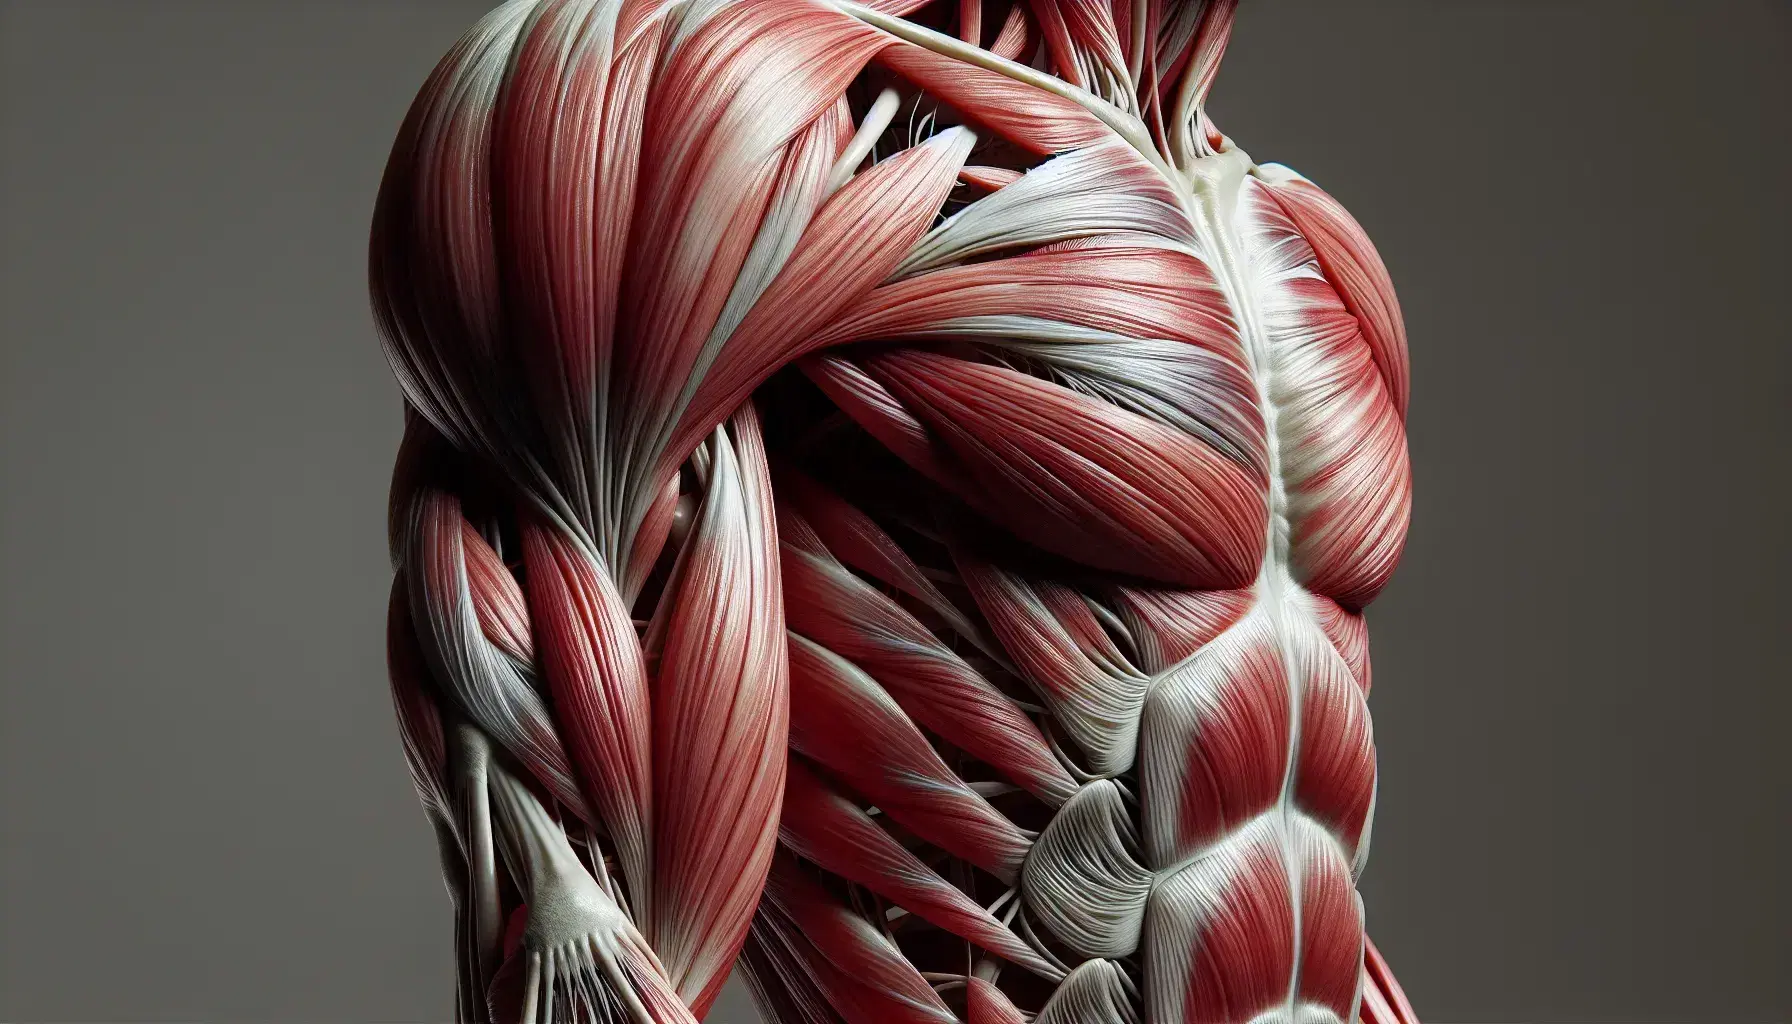 Vista detallada de la anatomía muscular del brazo humano con músculos en contracción, mostrando bíceps y tríceps y sus inserciones tendinosas.